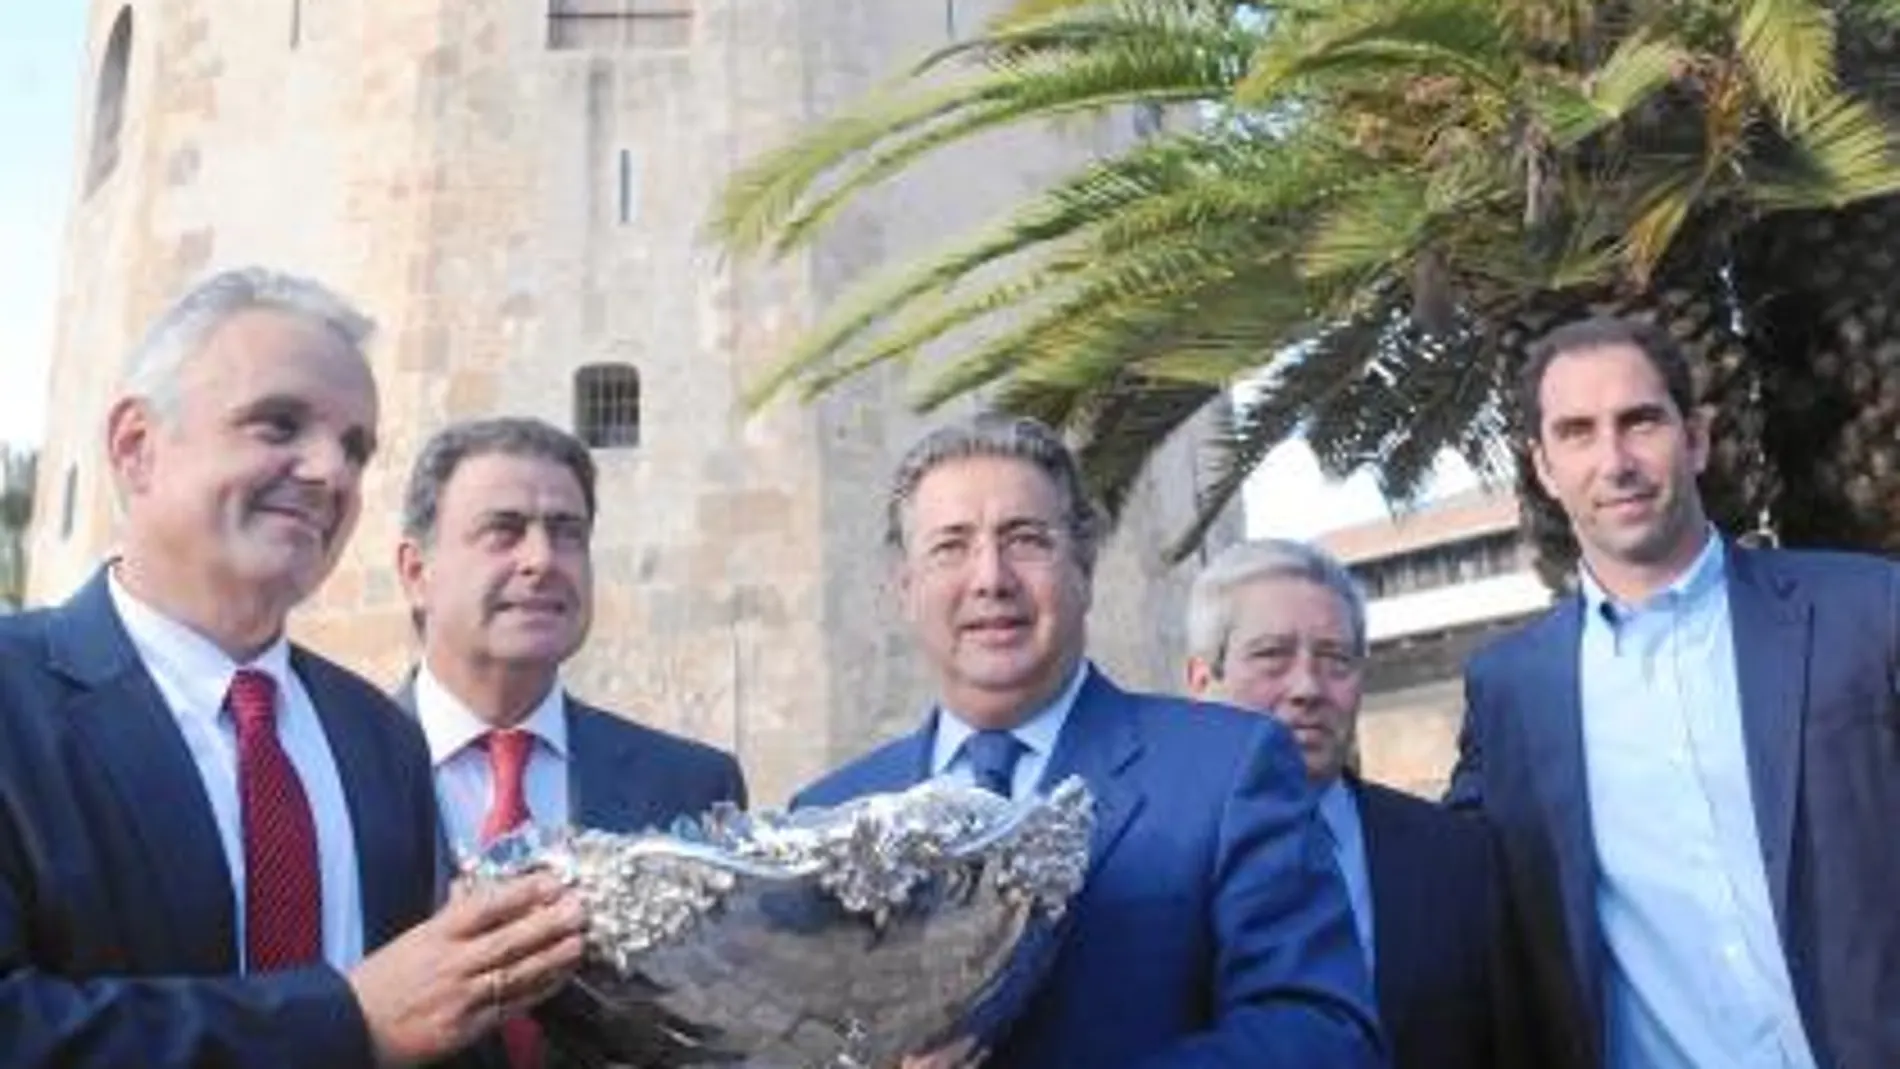 El alcalde, con el presidente de la Federación Española, sostiene la ensaladera tras llegar ésta a Sevilla